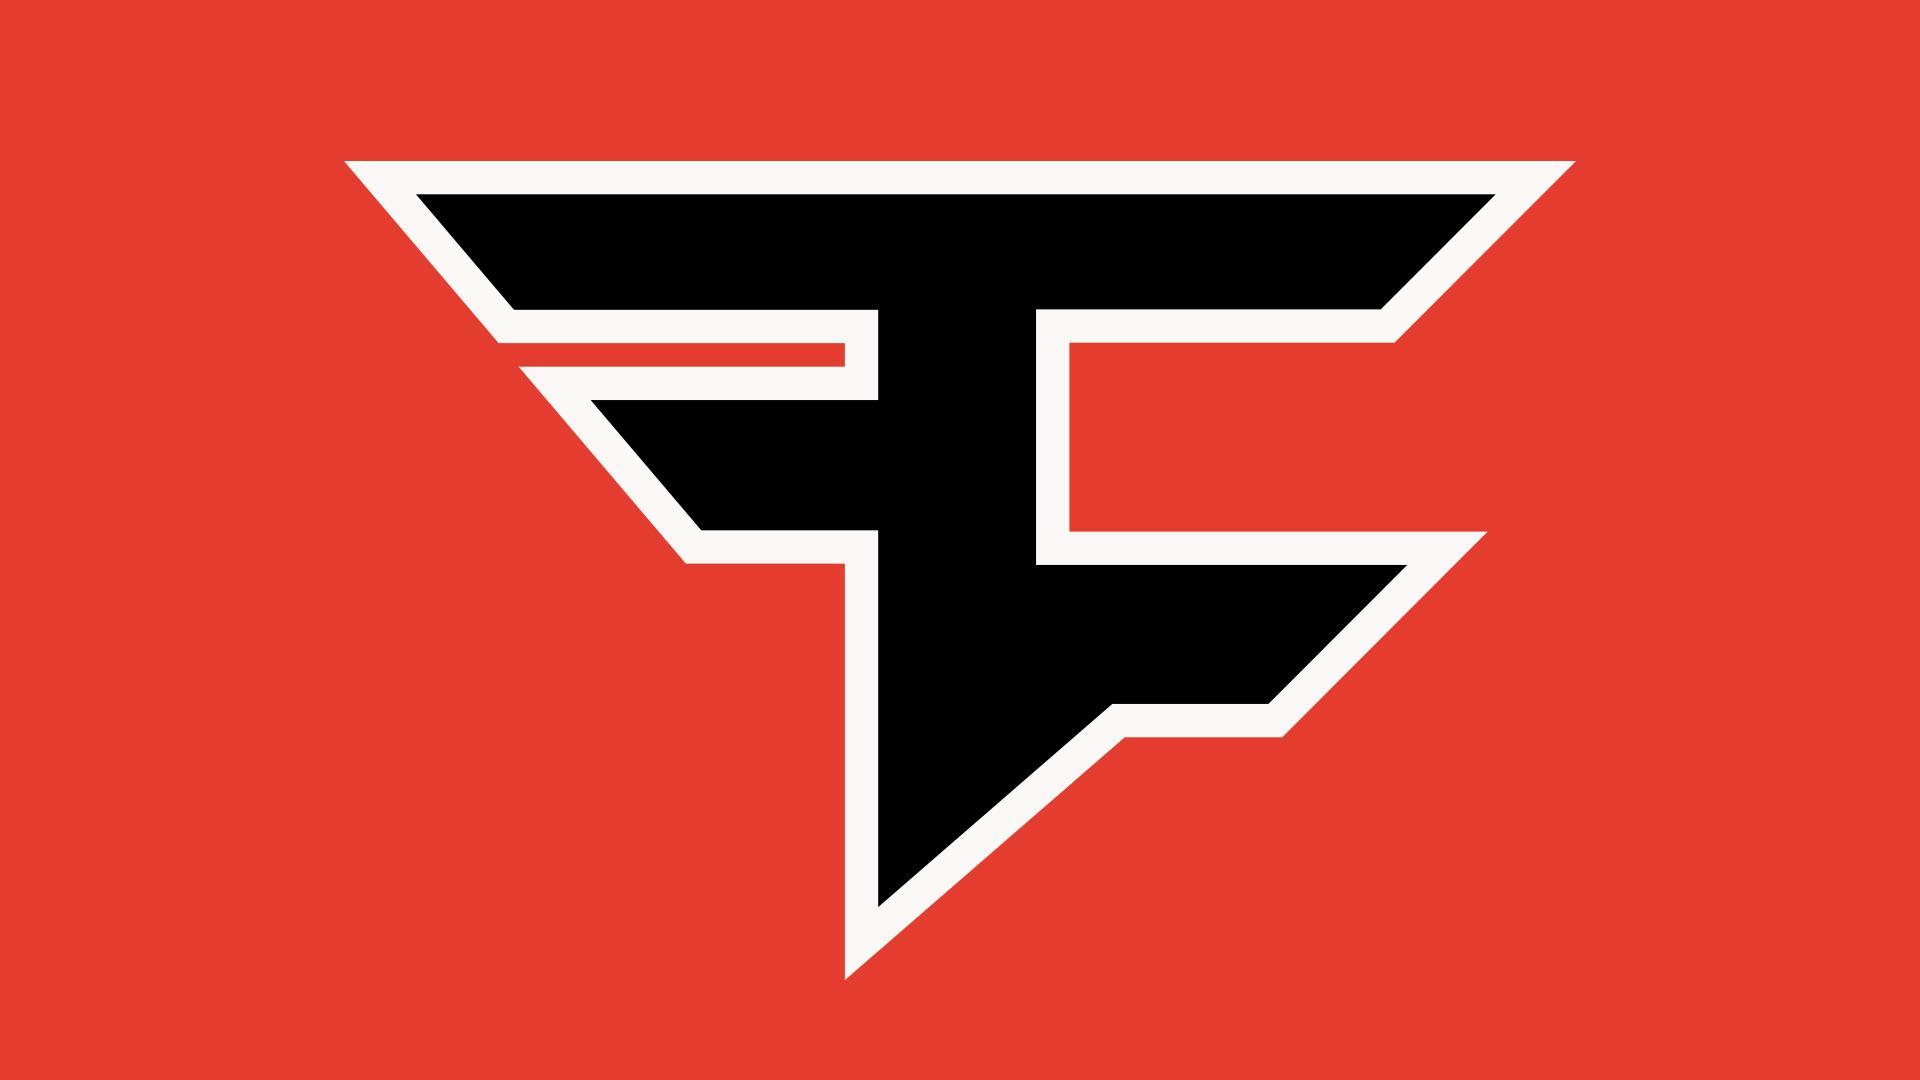 Fazeclan Logo - FaZe Clan, CRAY Join Texas A&M At SXSW - Texas A&M Today